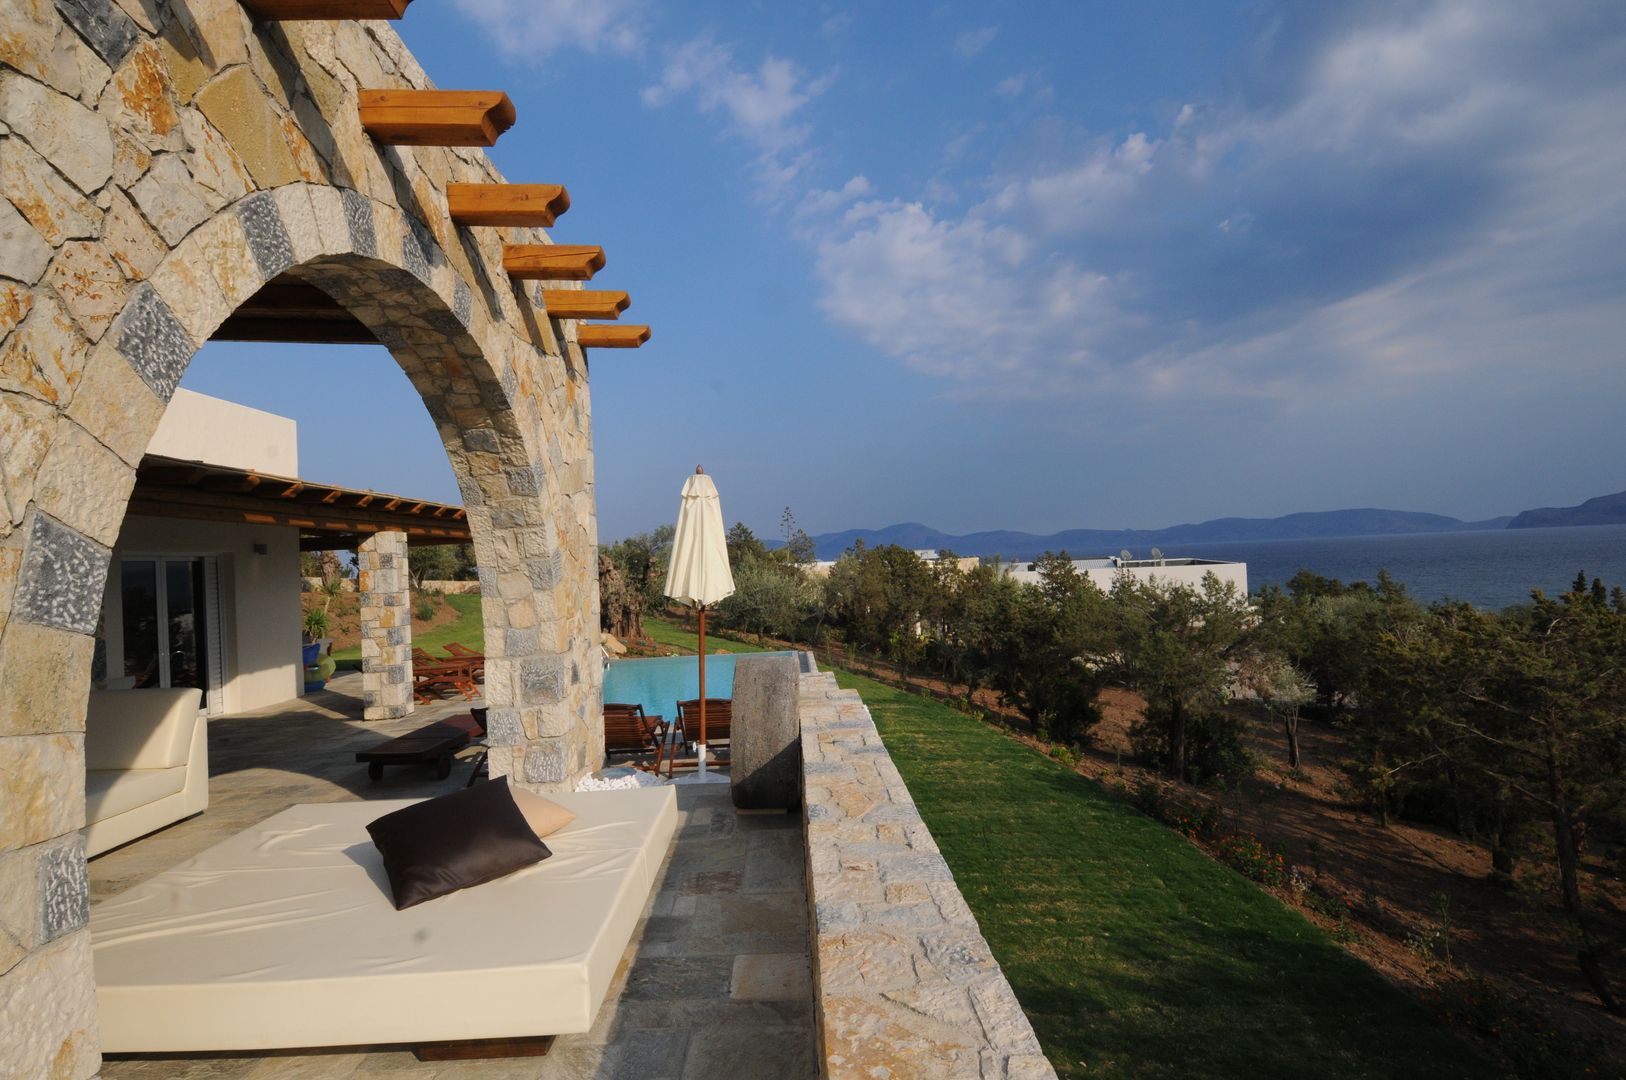 VILLA AL MARE Ermioni Grecia, CARLO CHIAPPANI interior designer CARLO CHIAPPANI interior designer Mediterranean style balcony, veranda & terrace